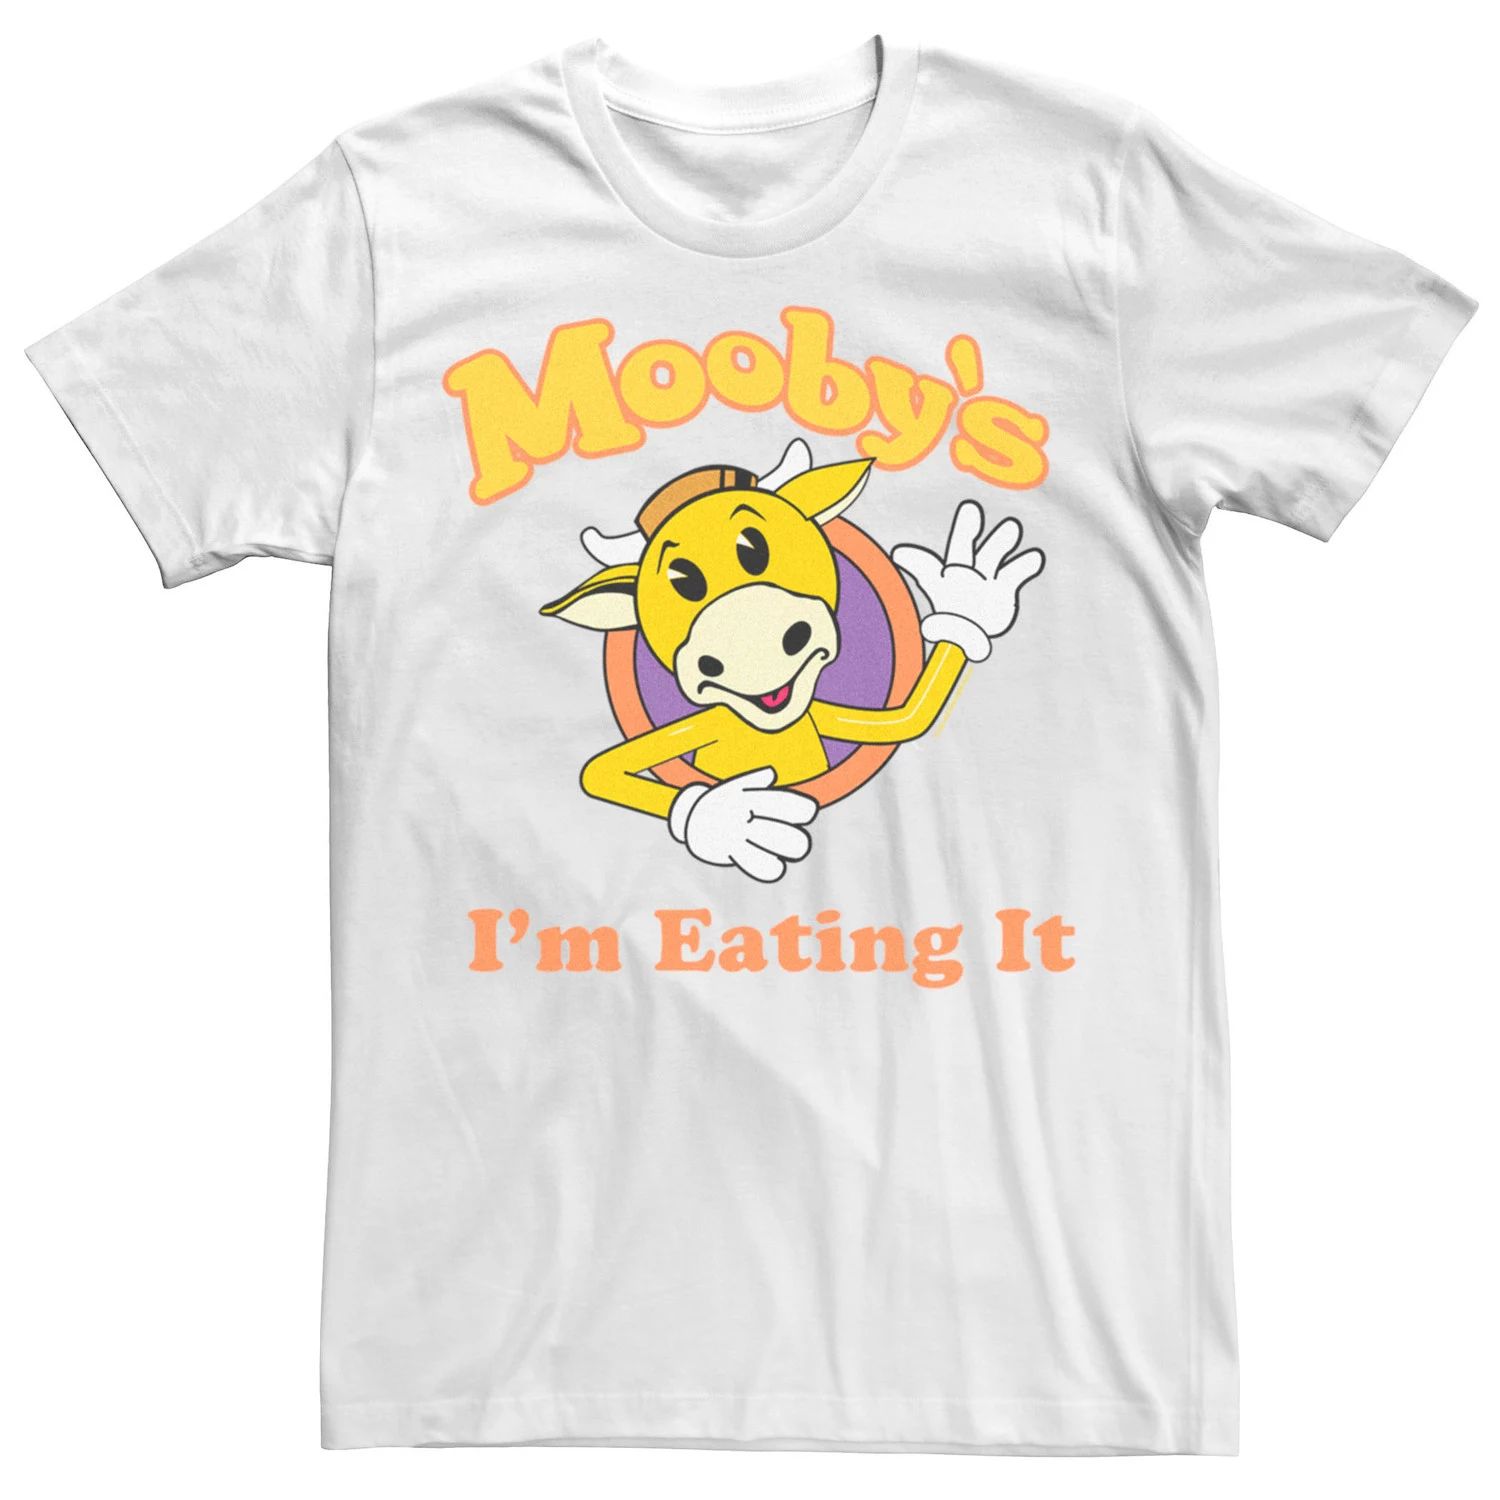 Мужская футболка Jay And Silent Bob Mooby's I'm Eate It с развевающимся логотипом Licensed Character